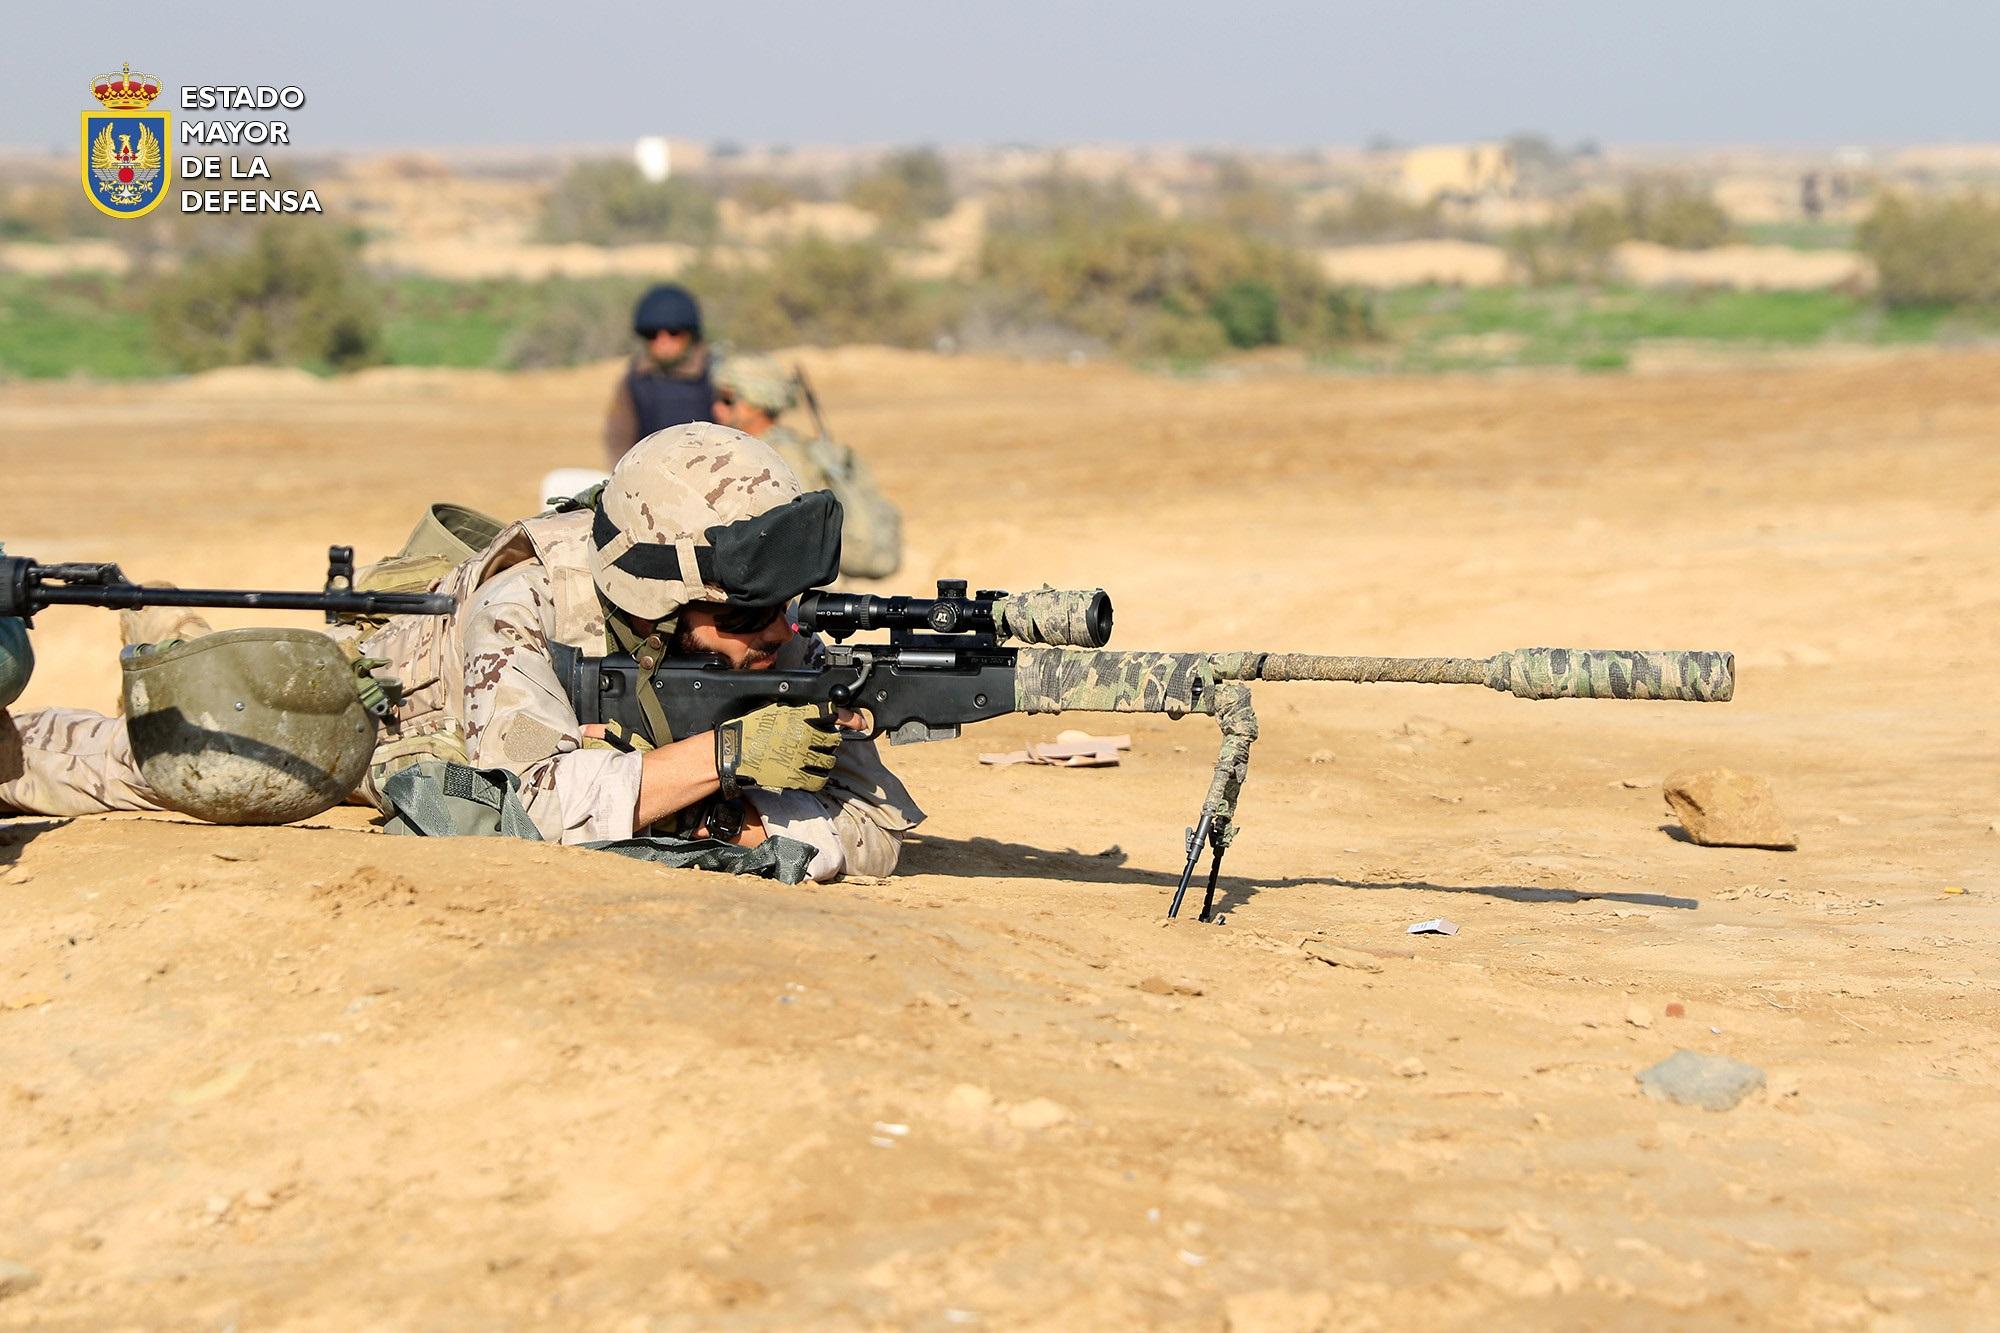 Militares españoles desplegados en Irak en Besmayah en la coalición internacional contra el terrorismo del DAESH